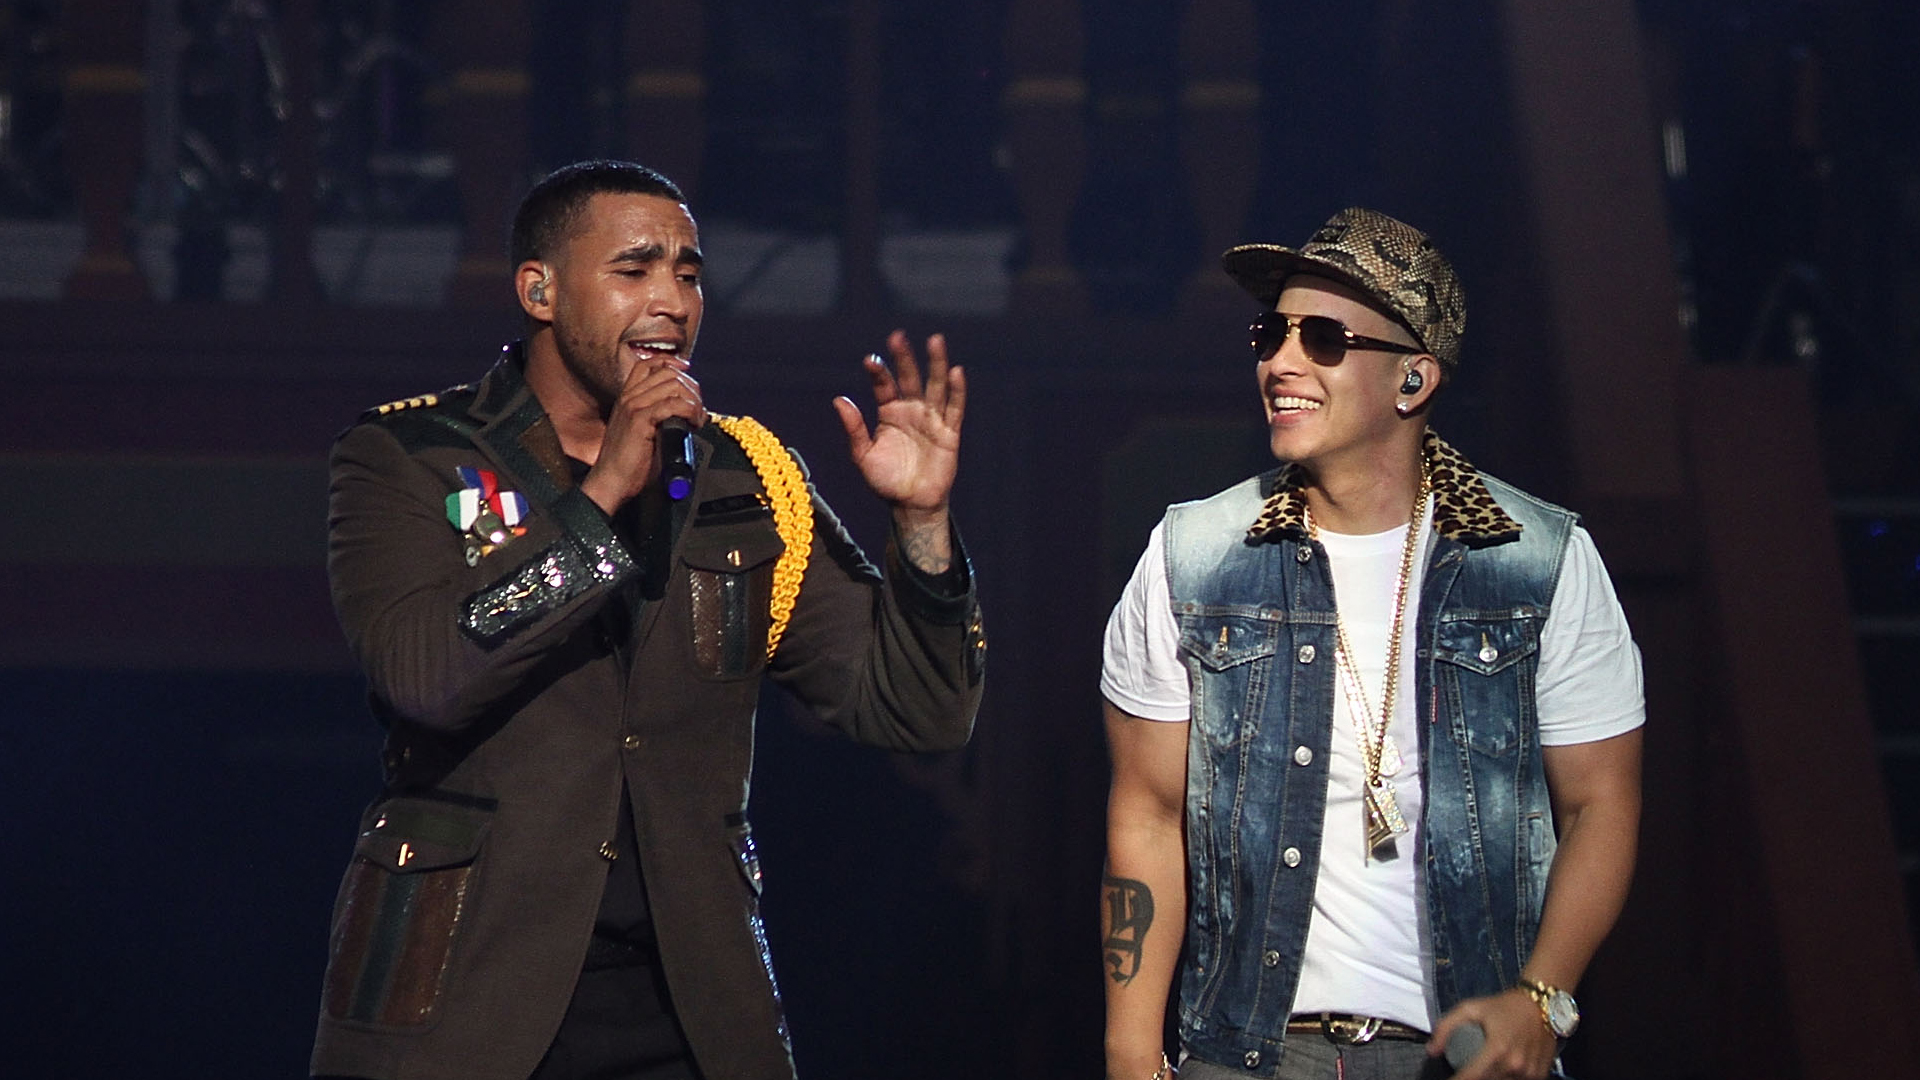 Exclusivo: Daddy Yankee y Don Omar anuncian gira de concierto juntos